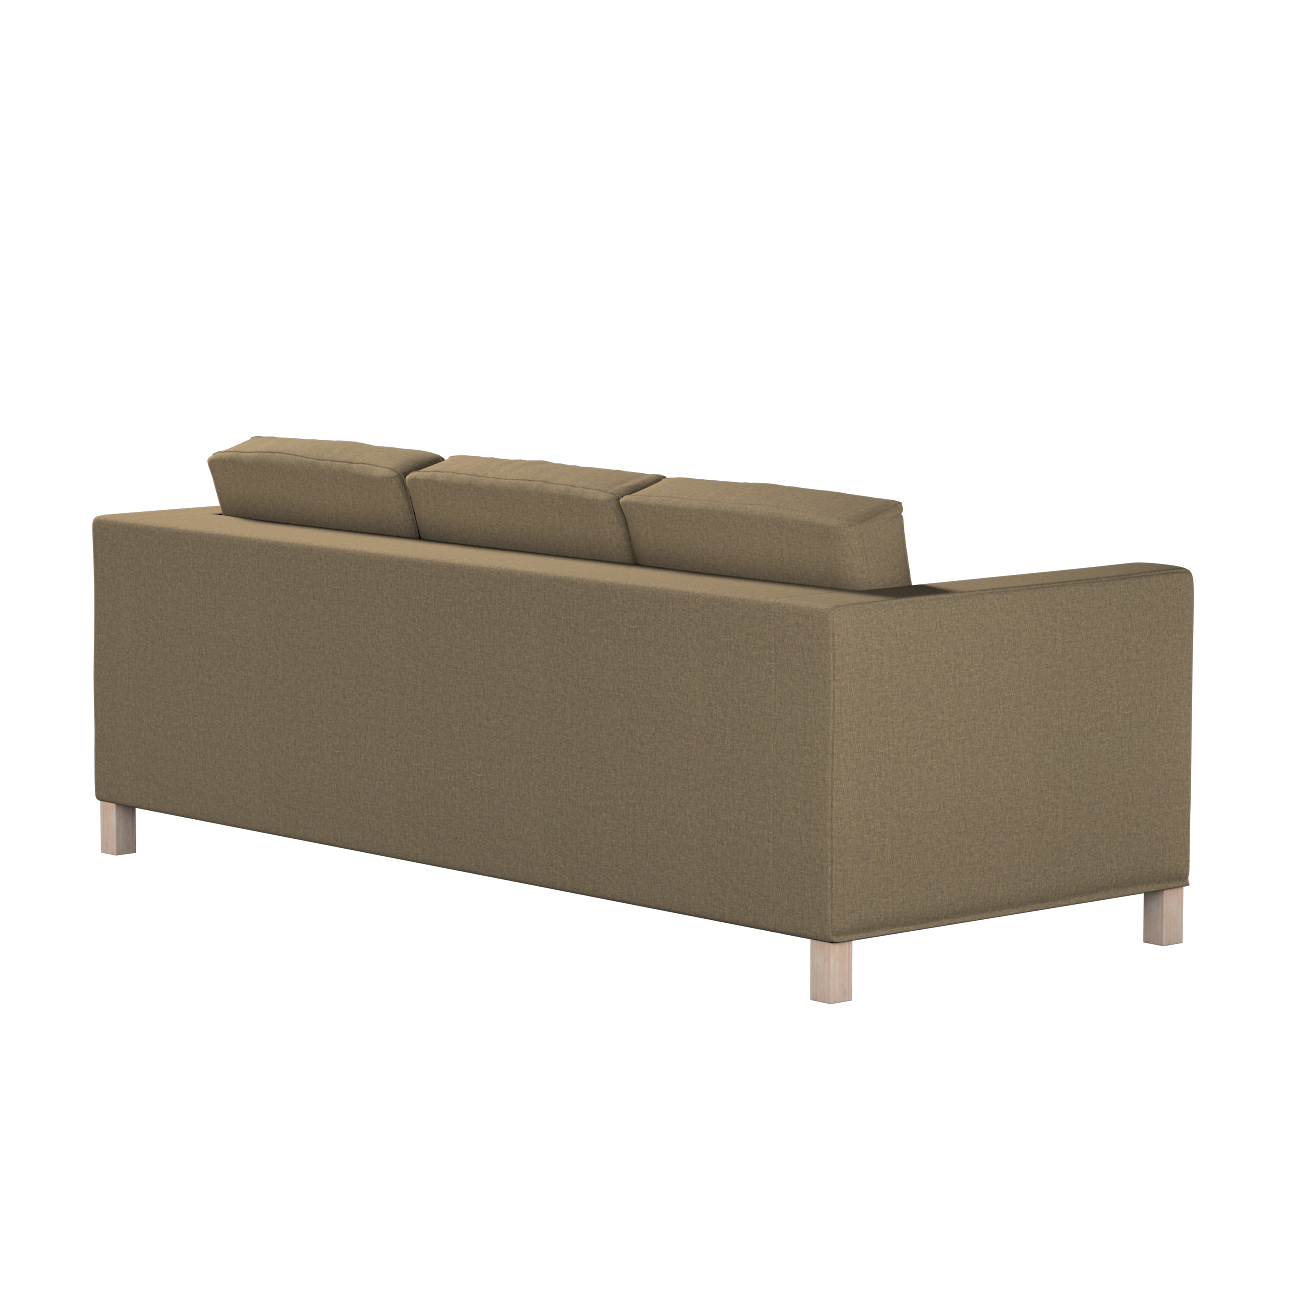 Bezug für Karlanda 3-Sitzer Sofa nicht ausklappbar, kurz, grau-braun, Bezug günstig online kaufen